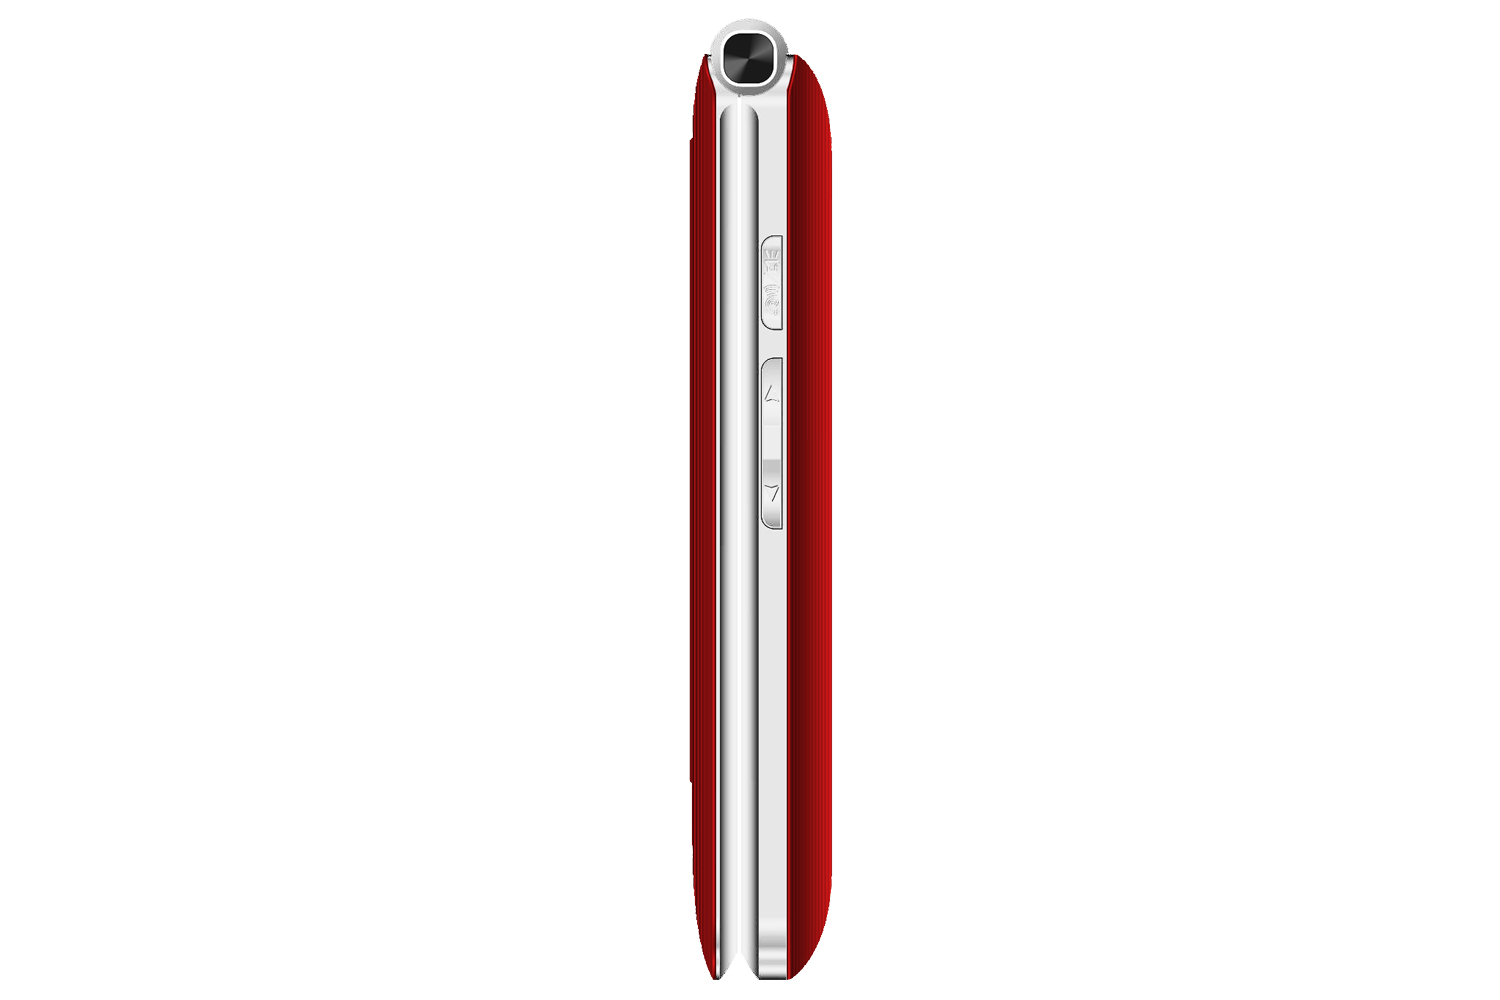 Evolveo EasyPhone FG s nabíjecím stojánkem, červená